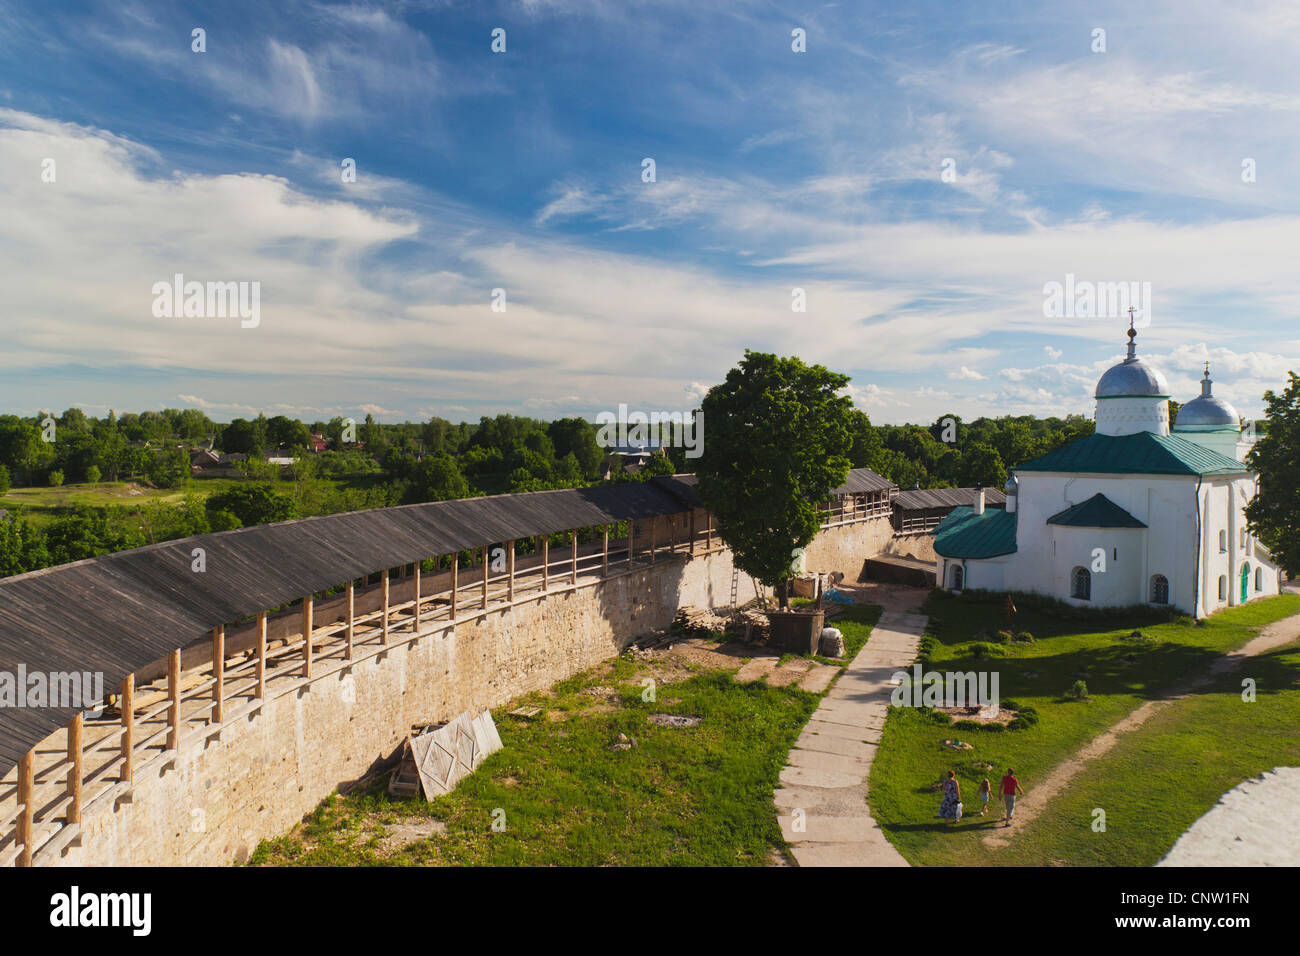 La Russie, Pskovskaya Oblast, Stary Izborsk, ruines de la plus vieille forteresse de pierre en Russie, l'église de Saint Nicholas, elevated view Banque D'Images